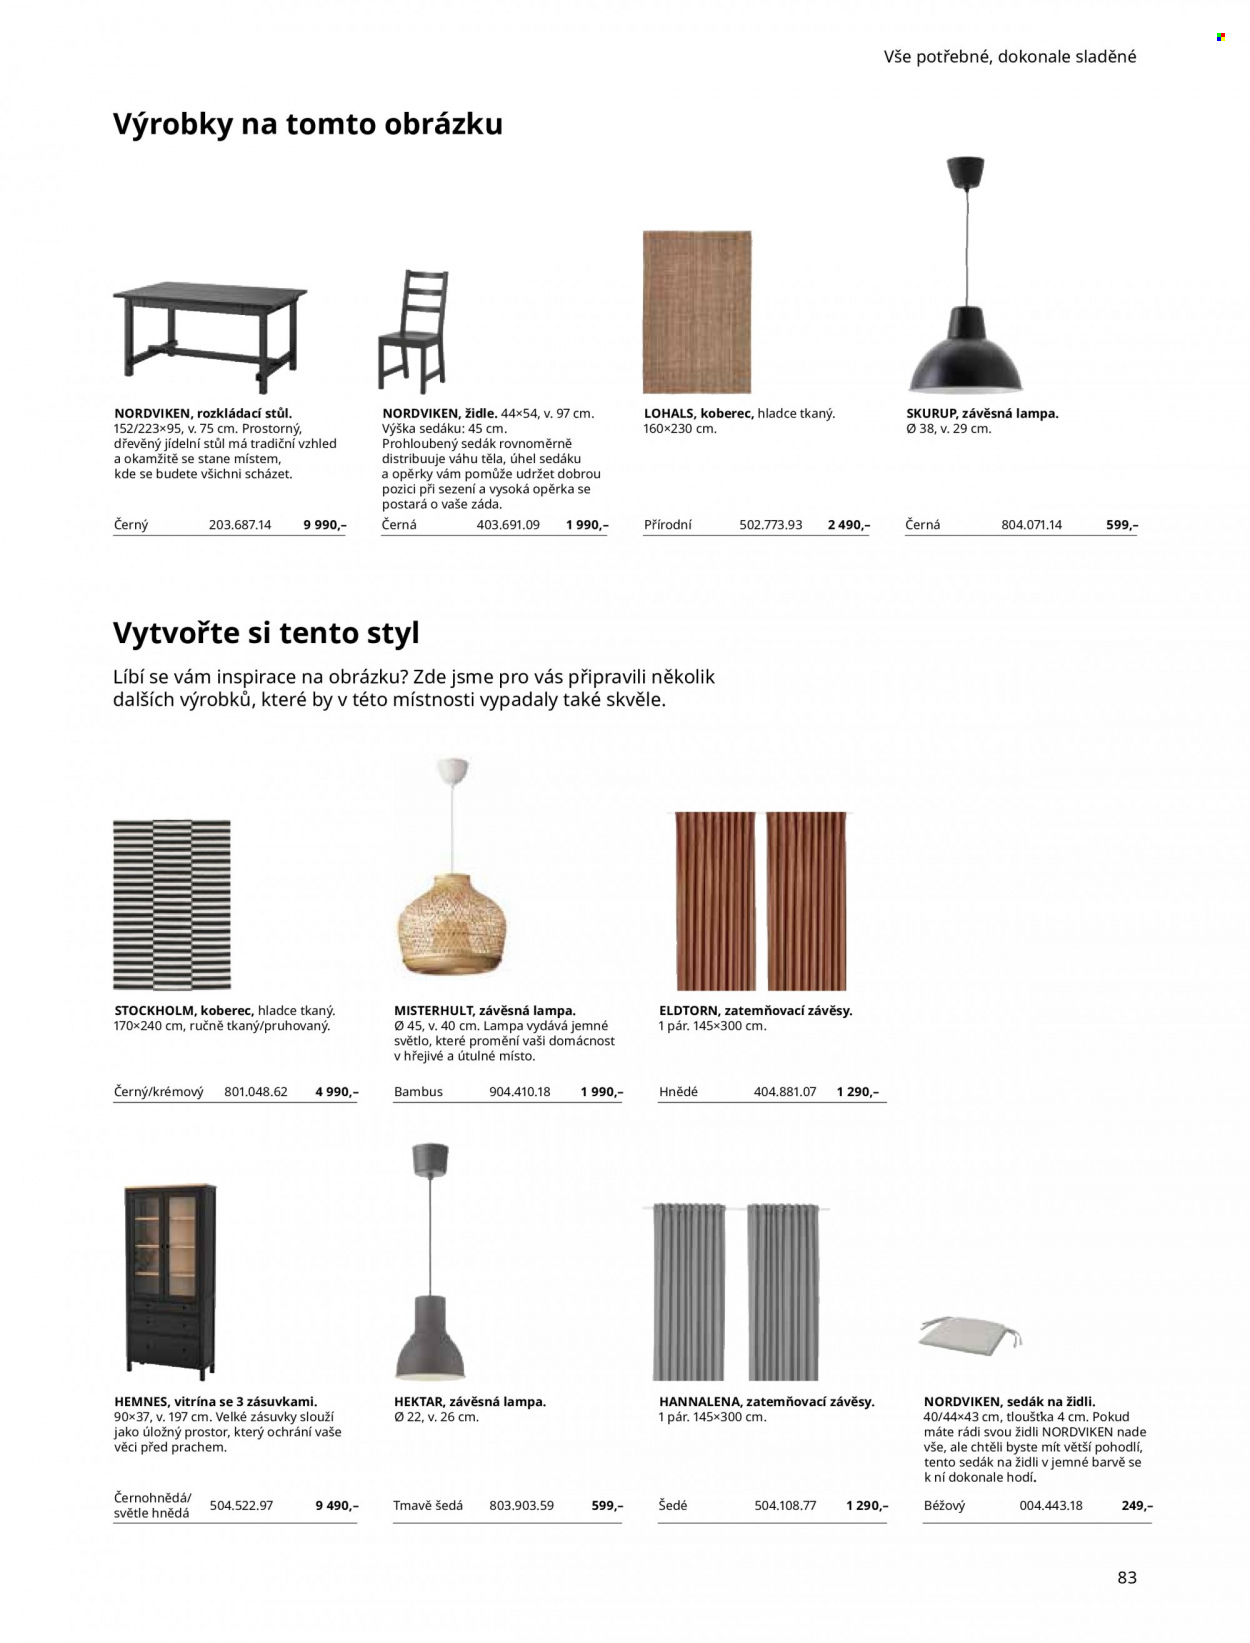 thumbnail - Leták IKEA - 27.5.2022 - 30.6.2022 - Produkty v akci - jídelní stůl, stůl, židle, Hemnes, vitrína, podsedák, závěs, zatemňovací závěsy, lampa, koberec, bambus. Strana 83.